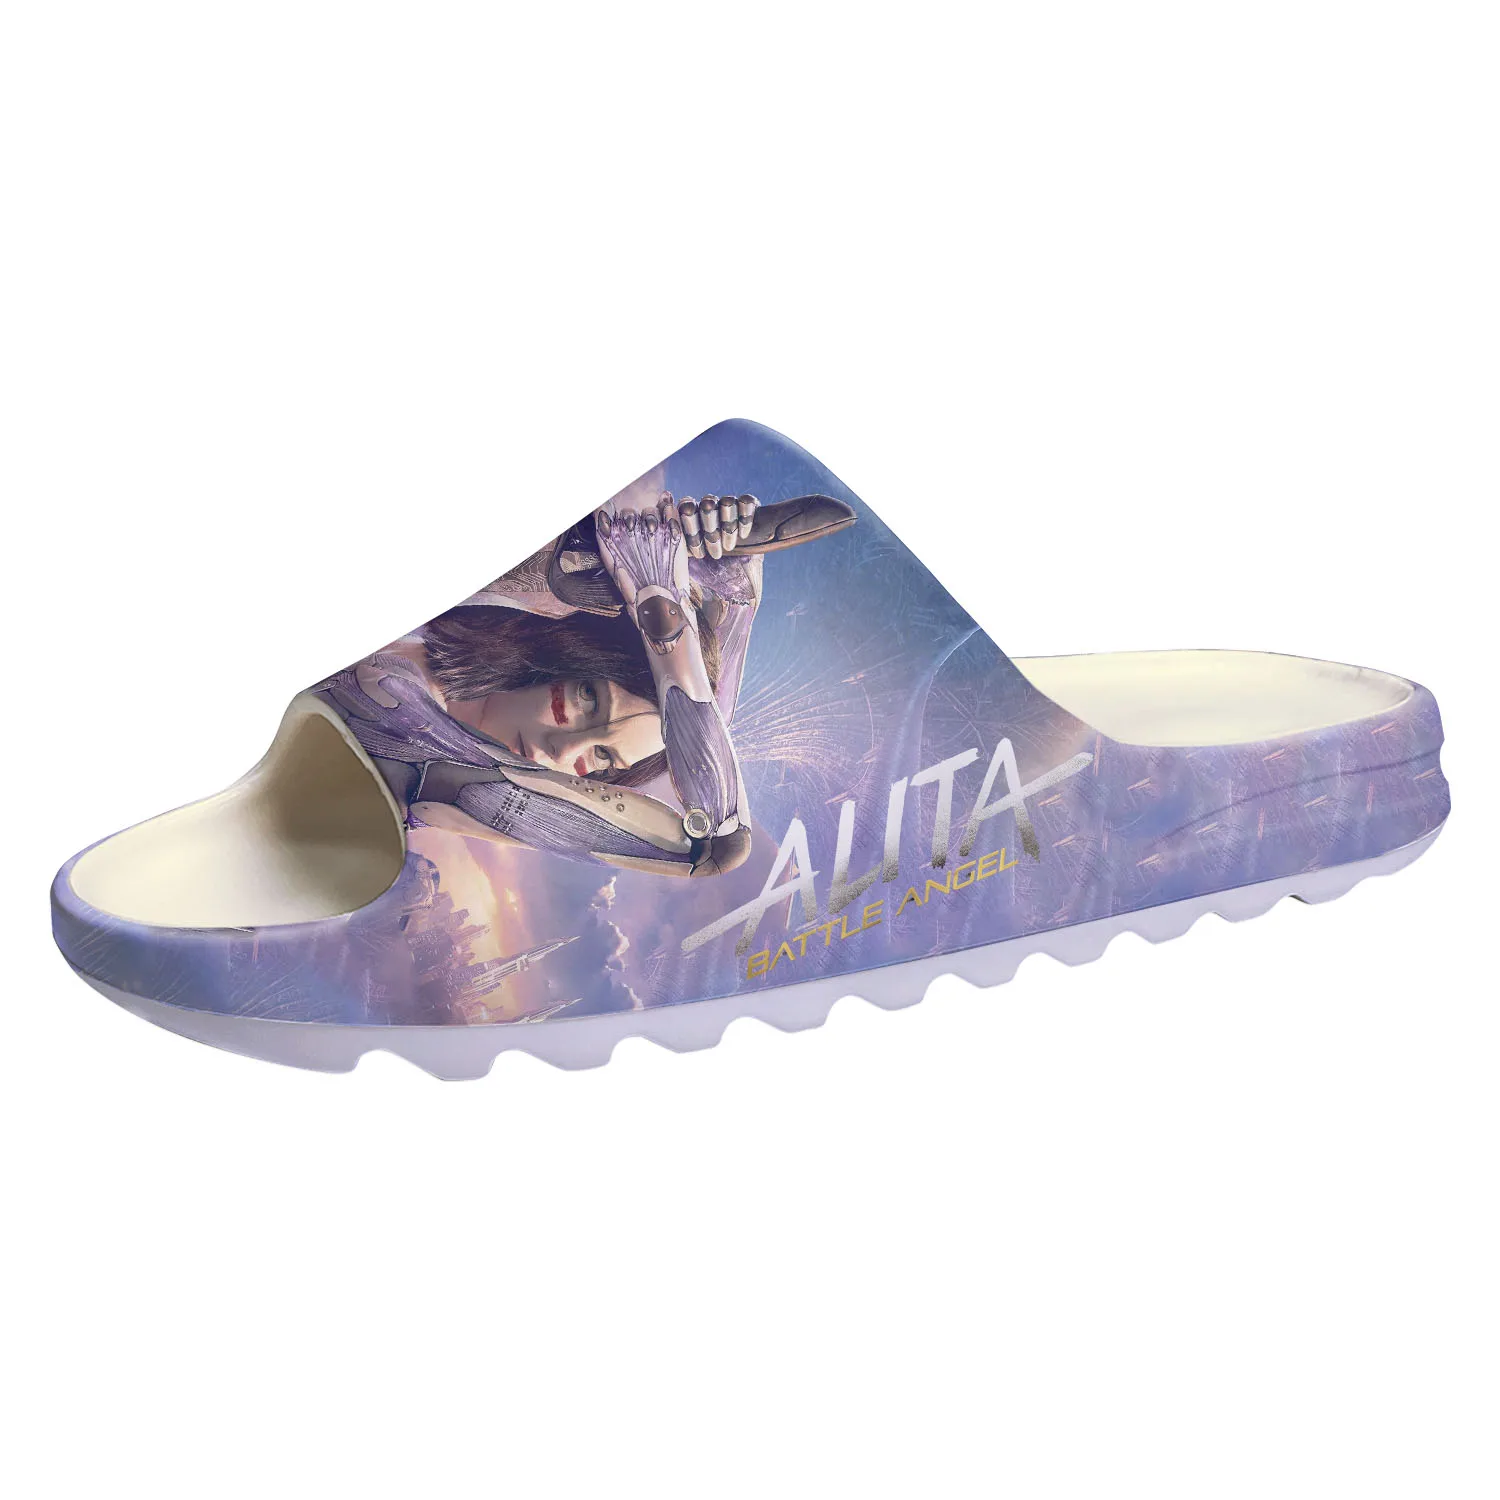 

Босоножки Alita Battle Angel с мягкой подошвой, домашние сабо в стиле киберпанк, обувь для воды, сандалии для подростков